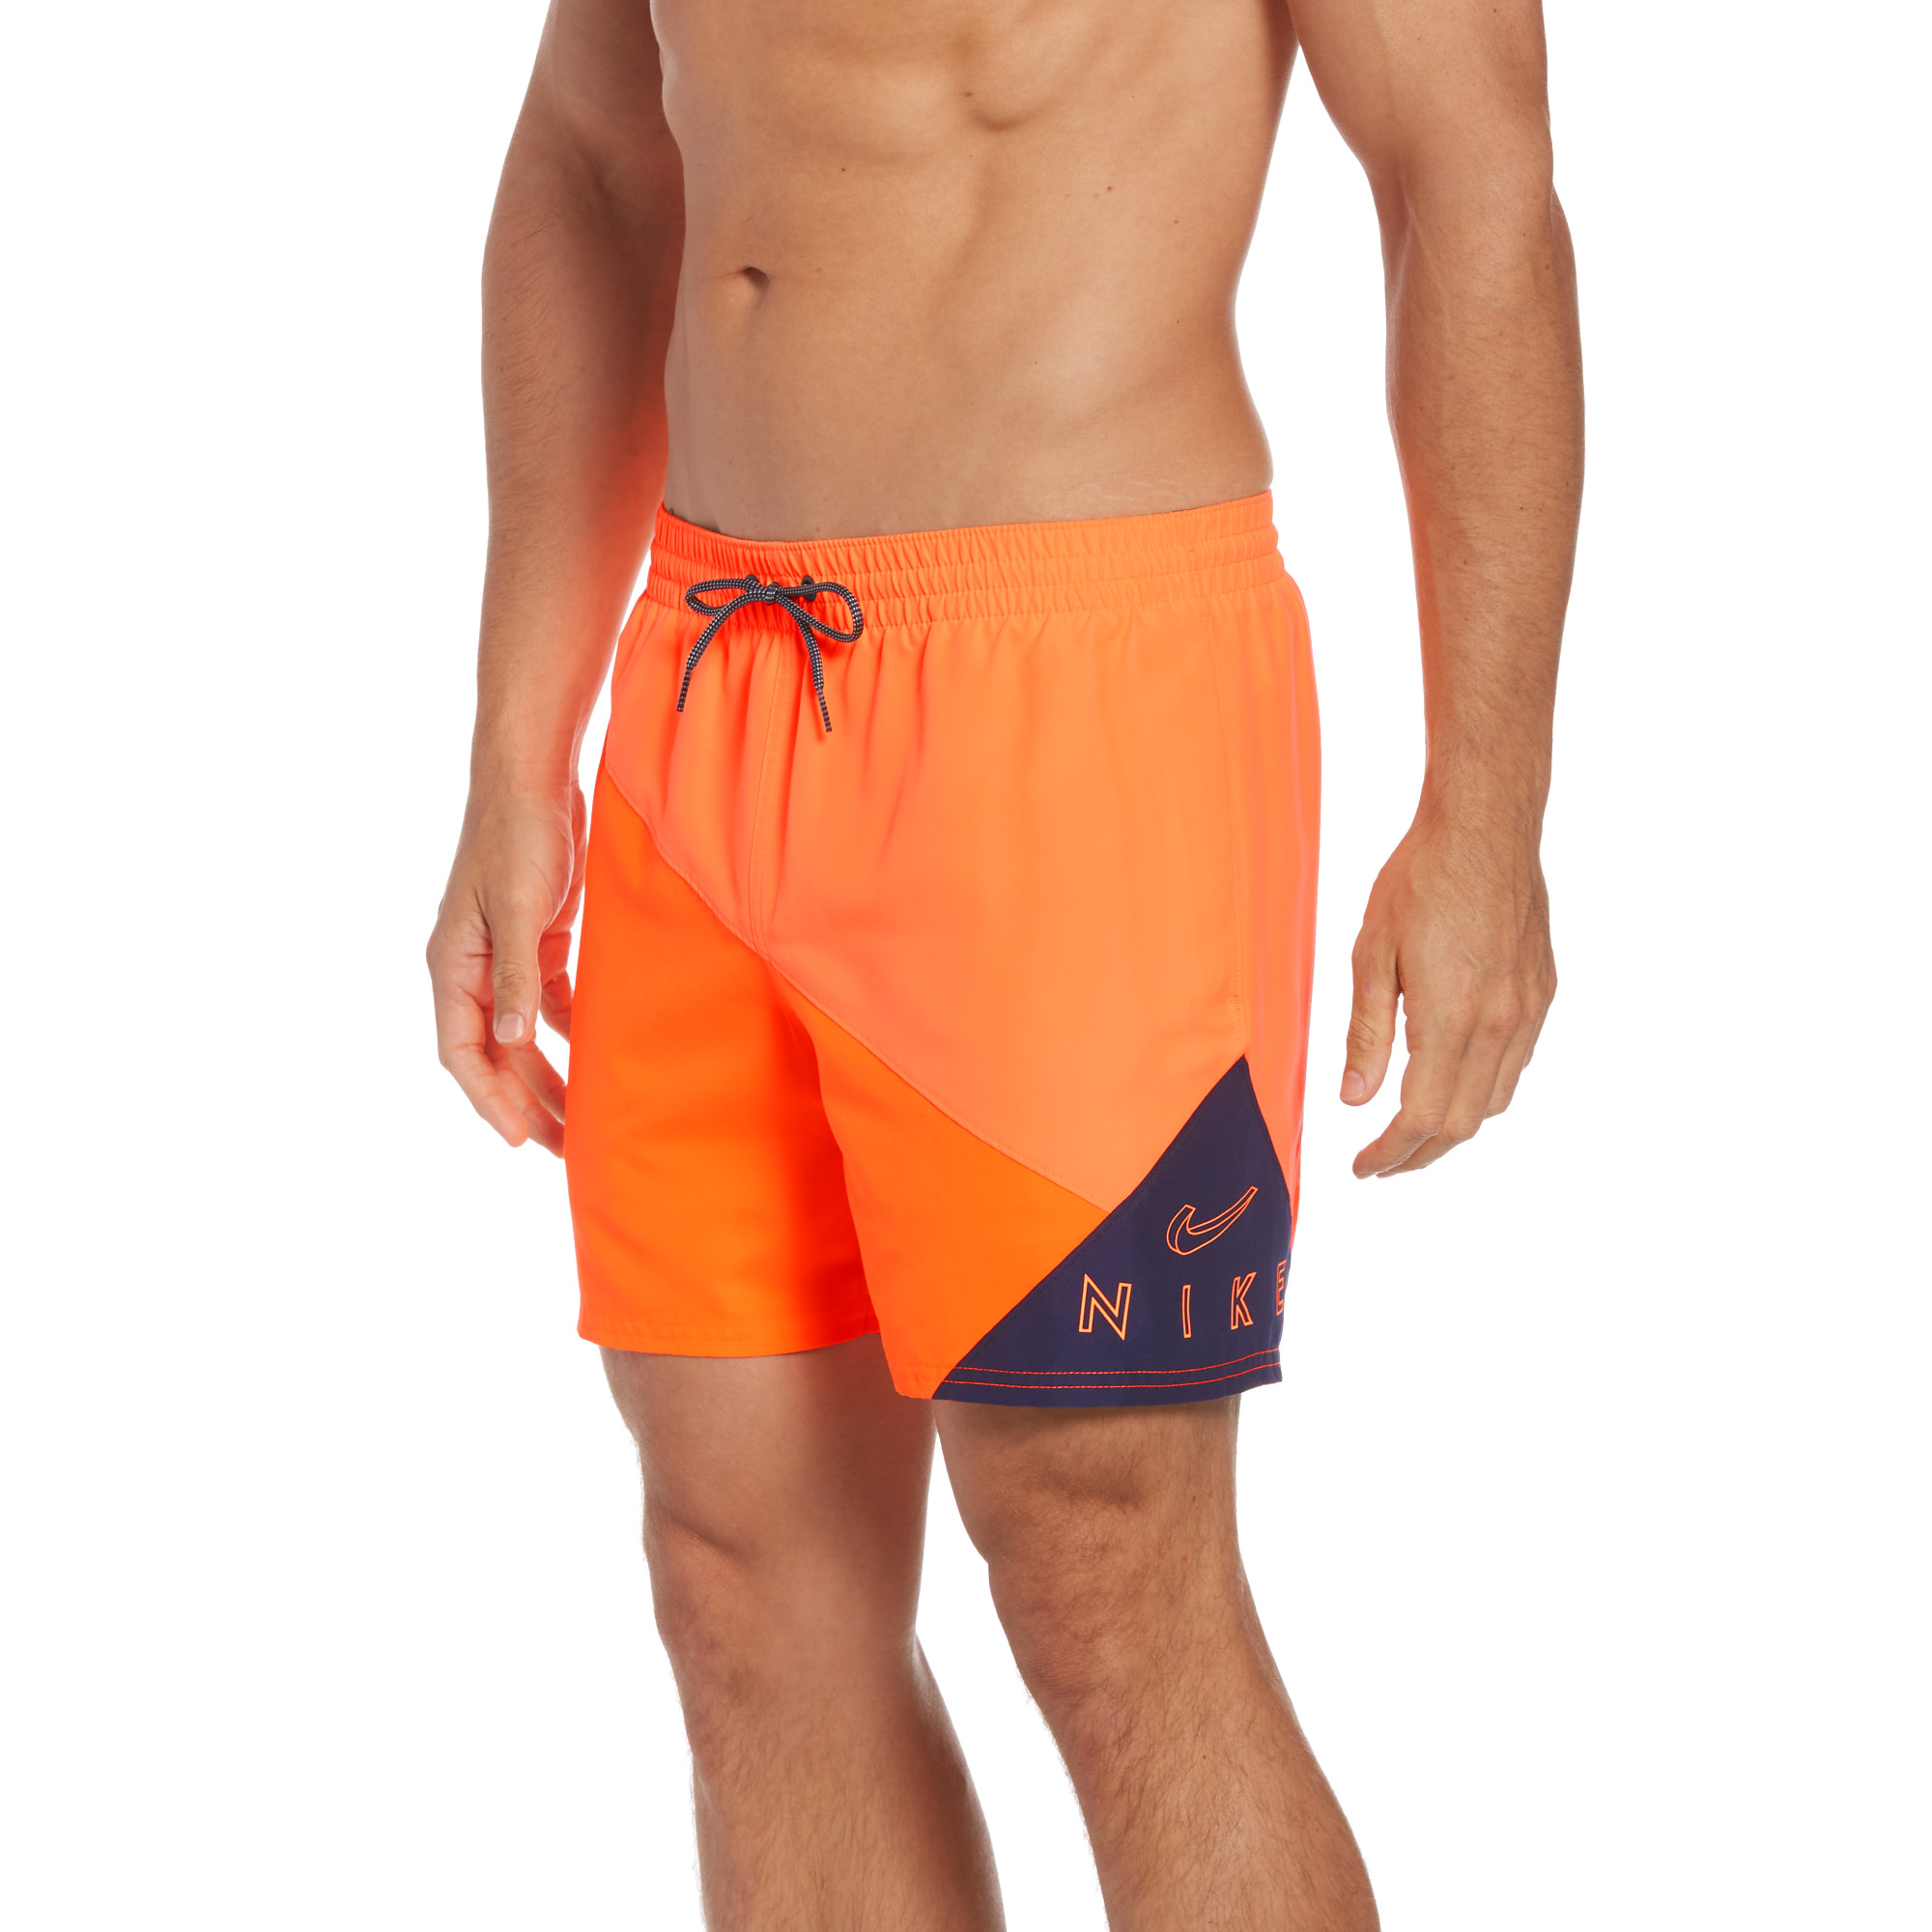 Шорты мужские Nike Swim NESSC470 оранжевые XS